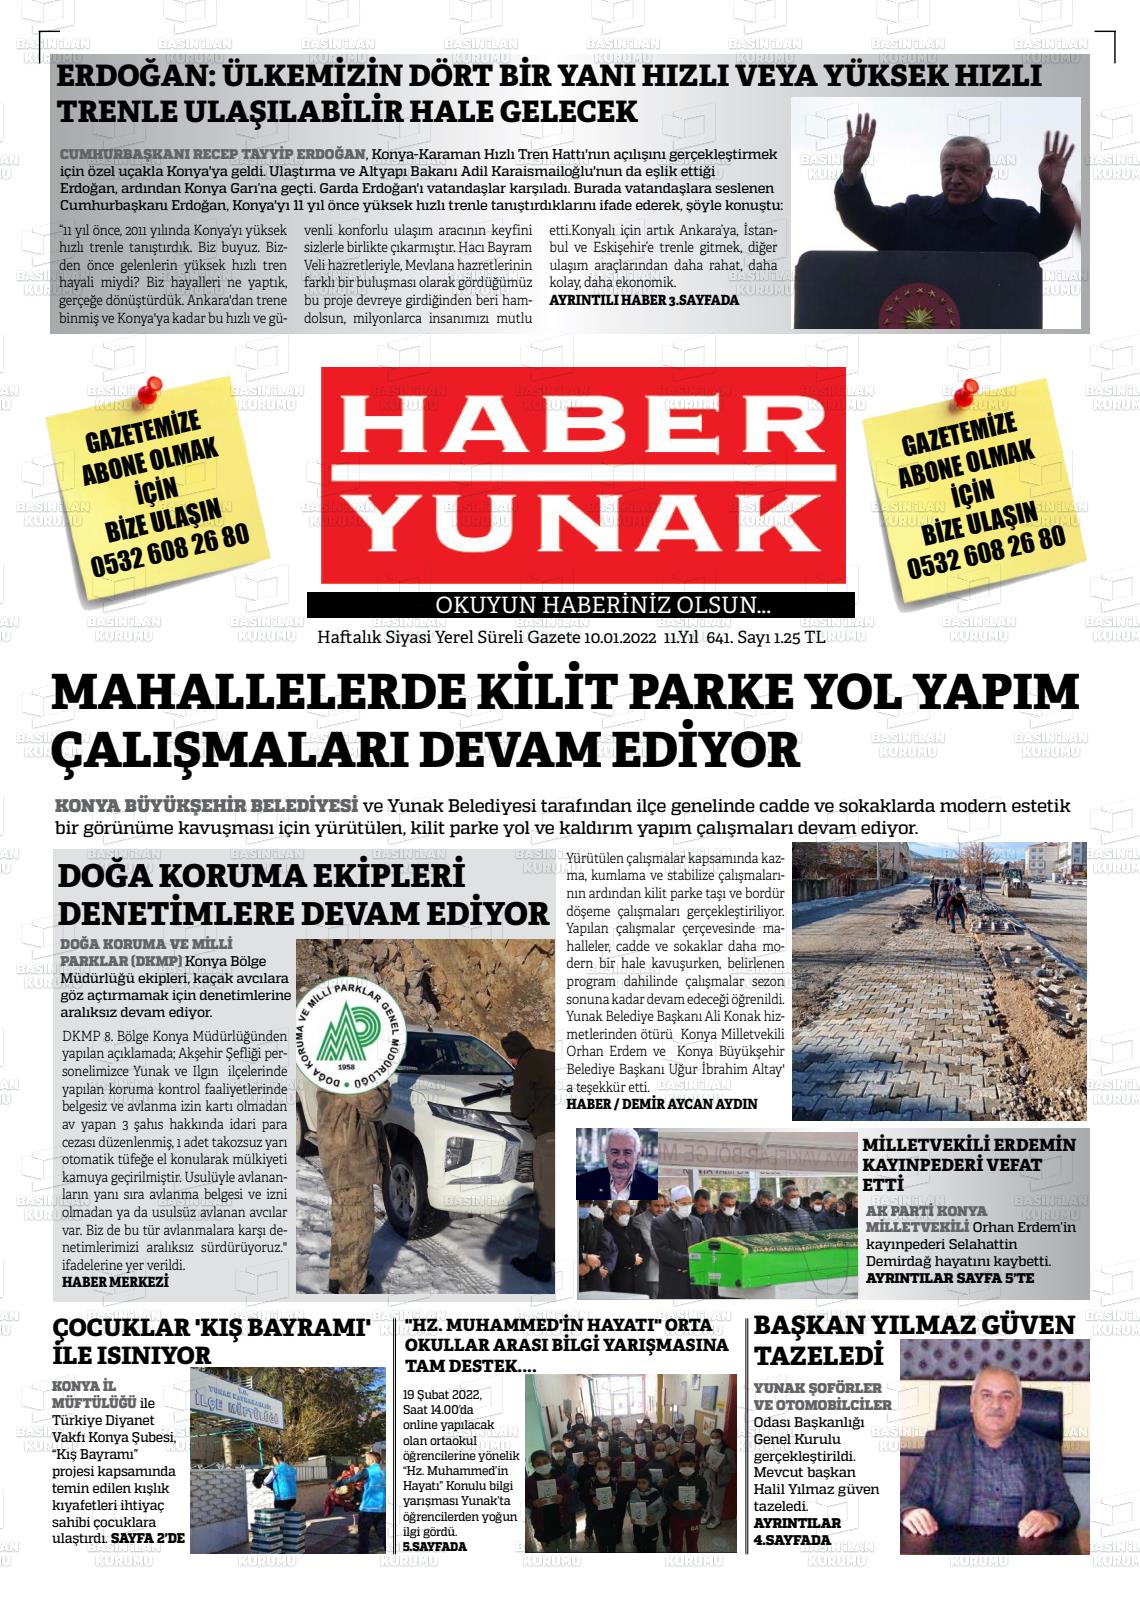 10 Ocak 2022 Haber Yunak Gazete Manşeti